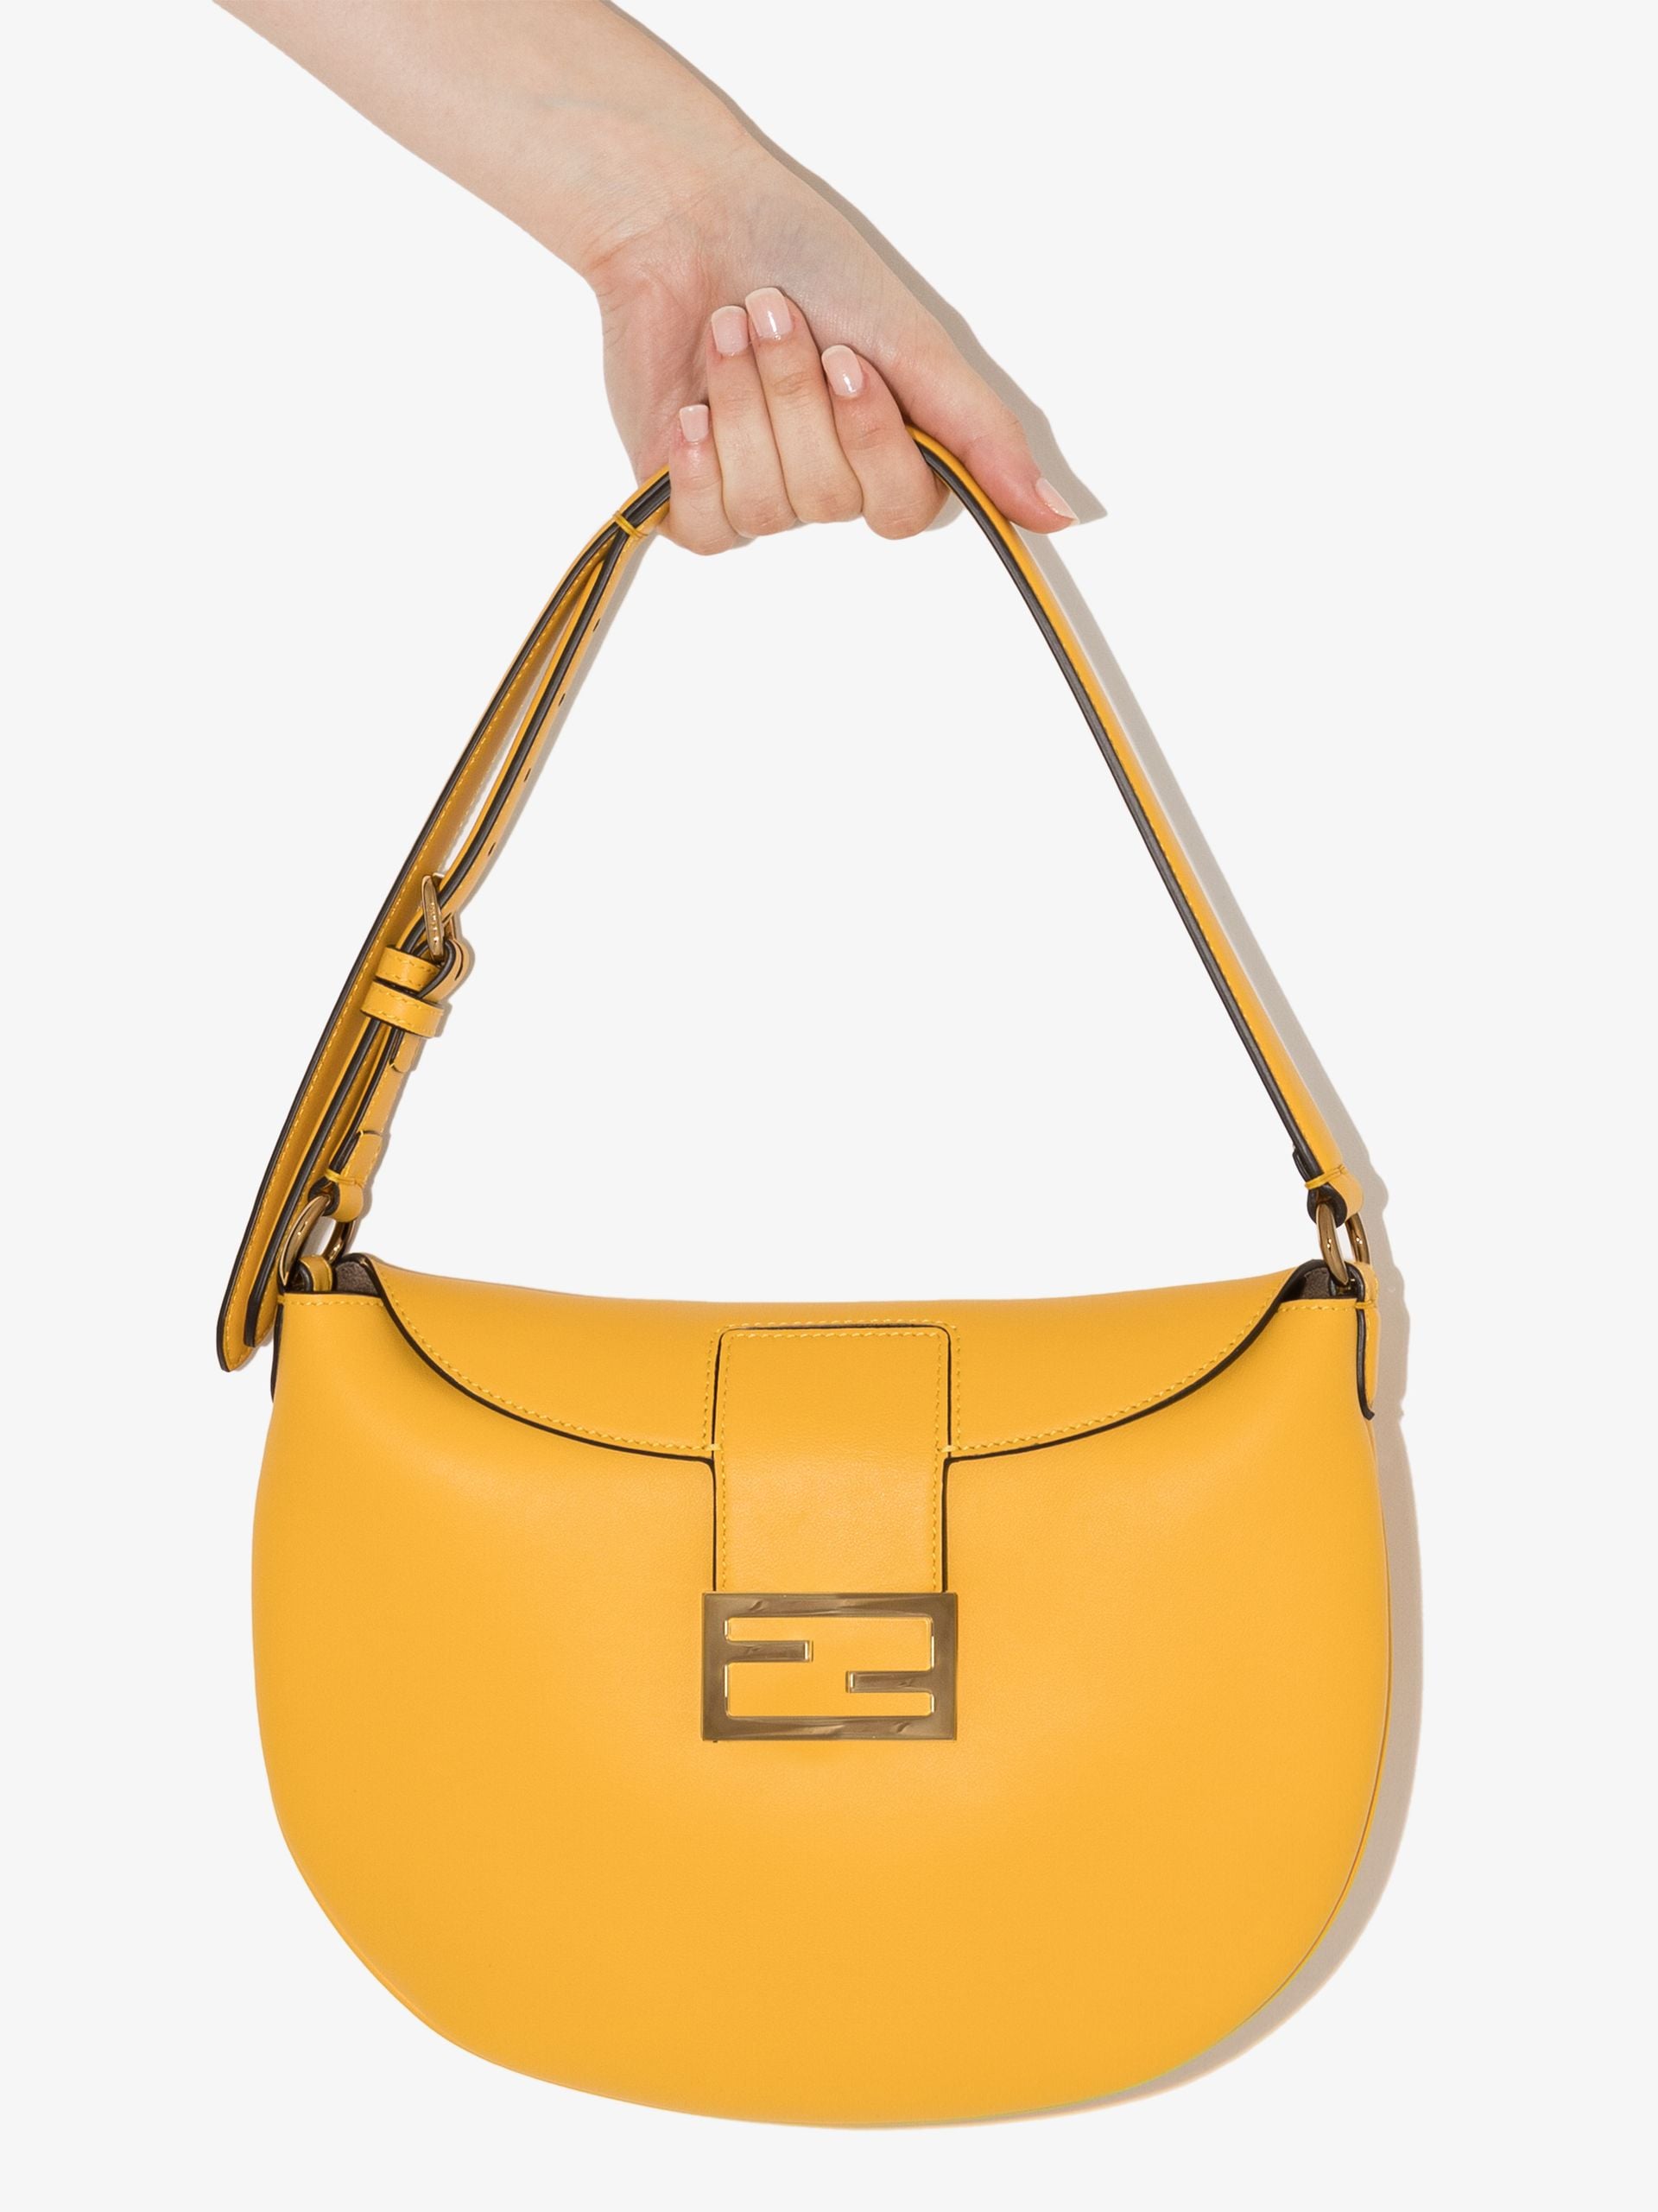 Fendi Yellow Croissant Leather Shoulder Bag ($2,010)